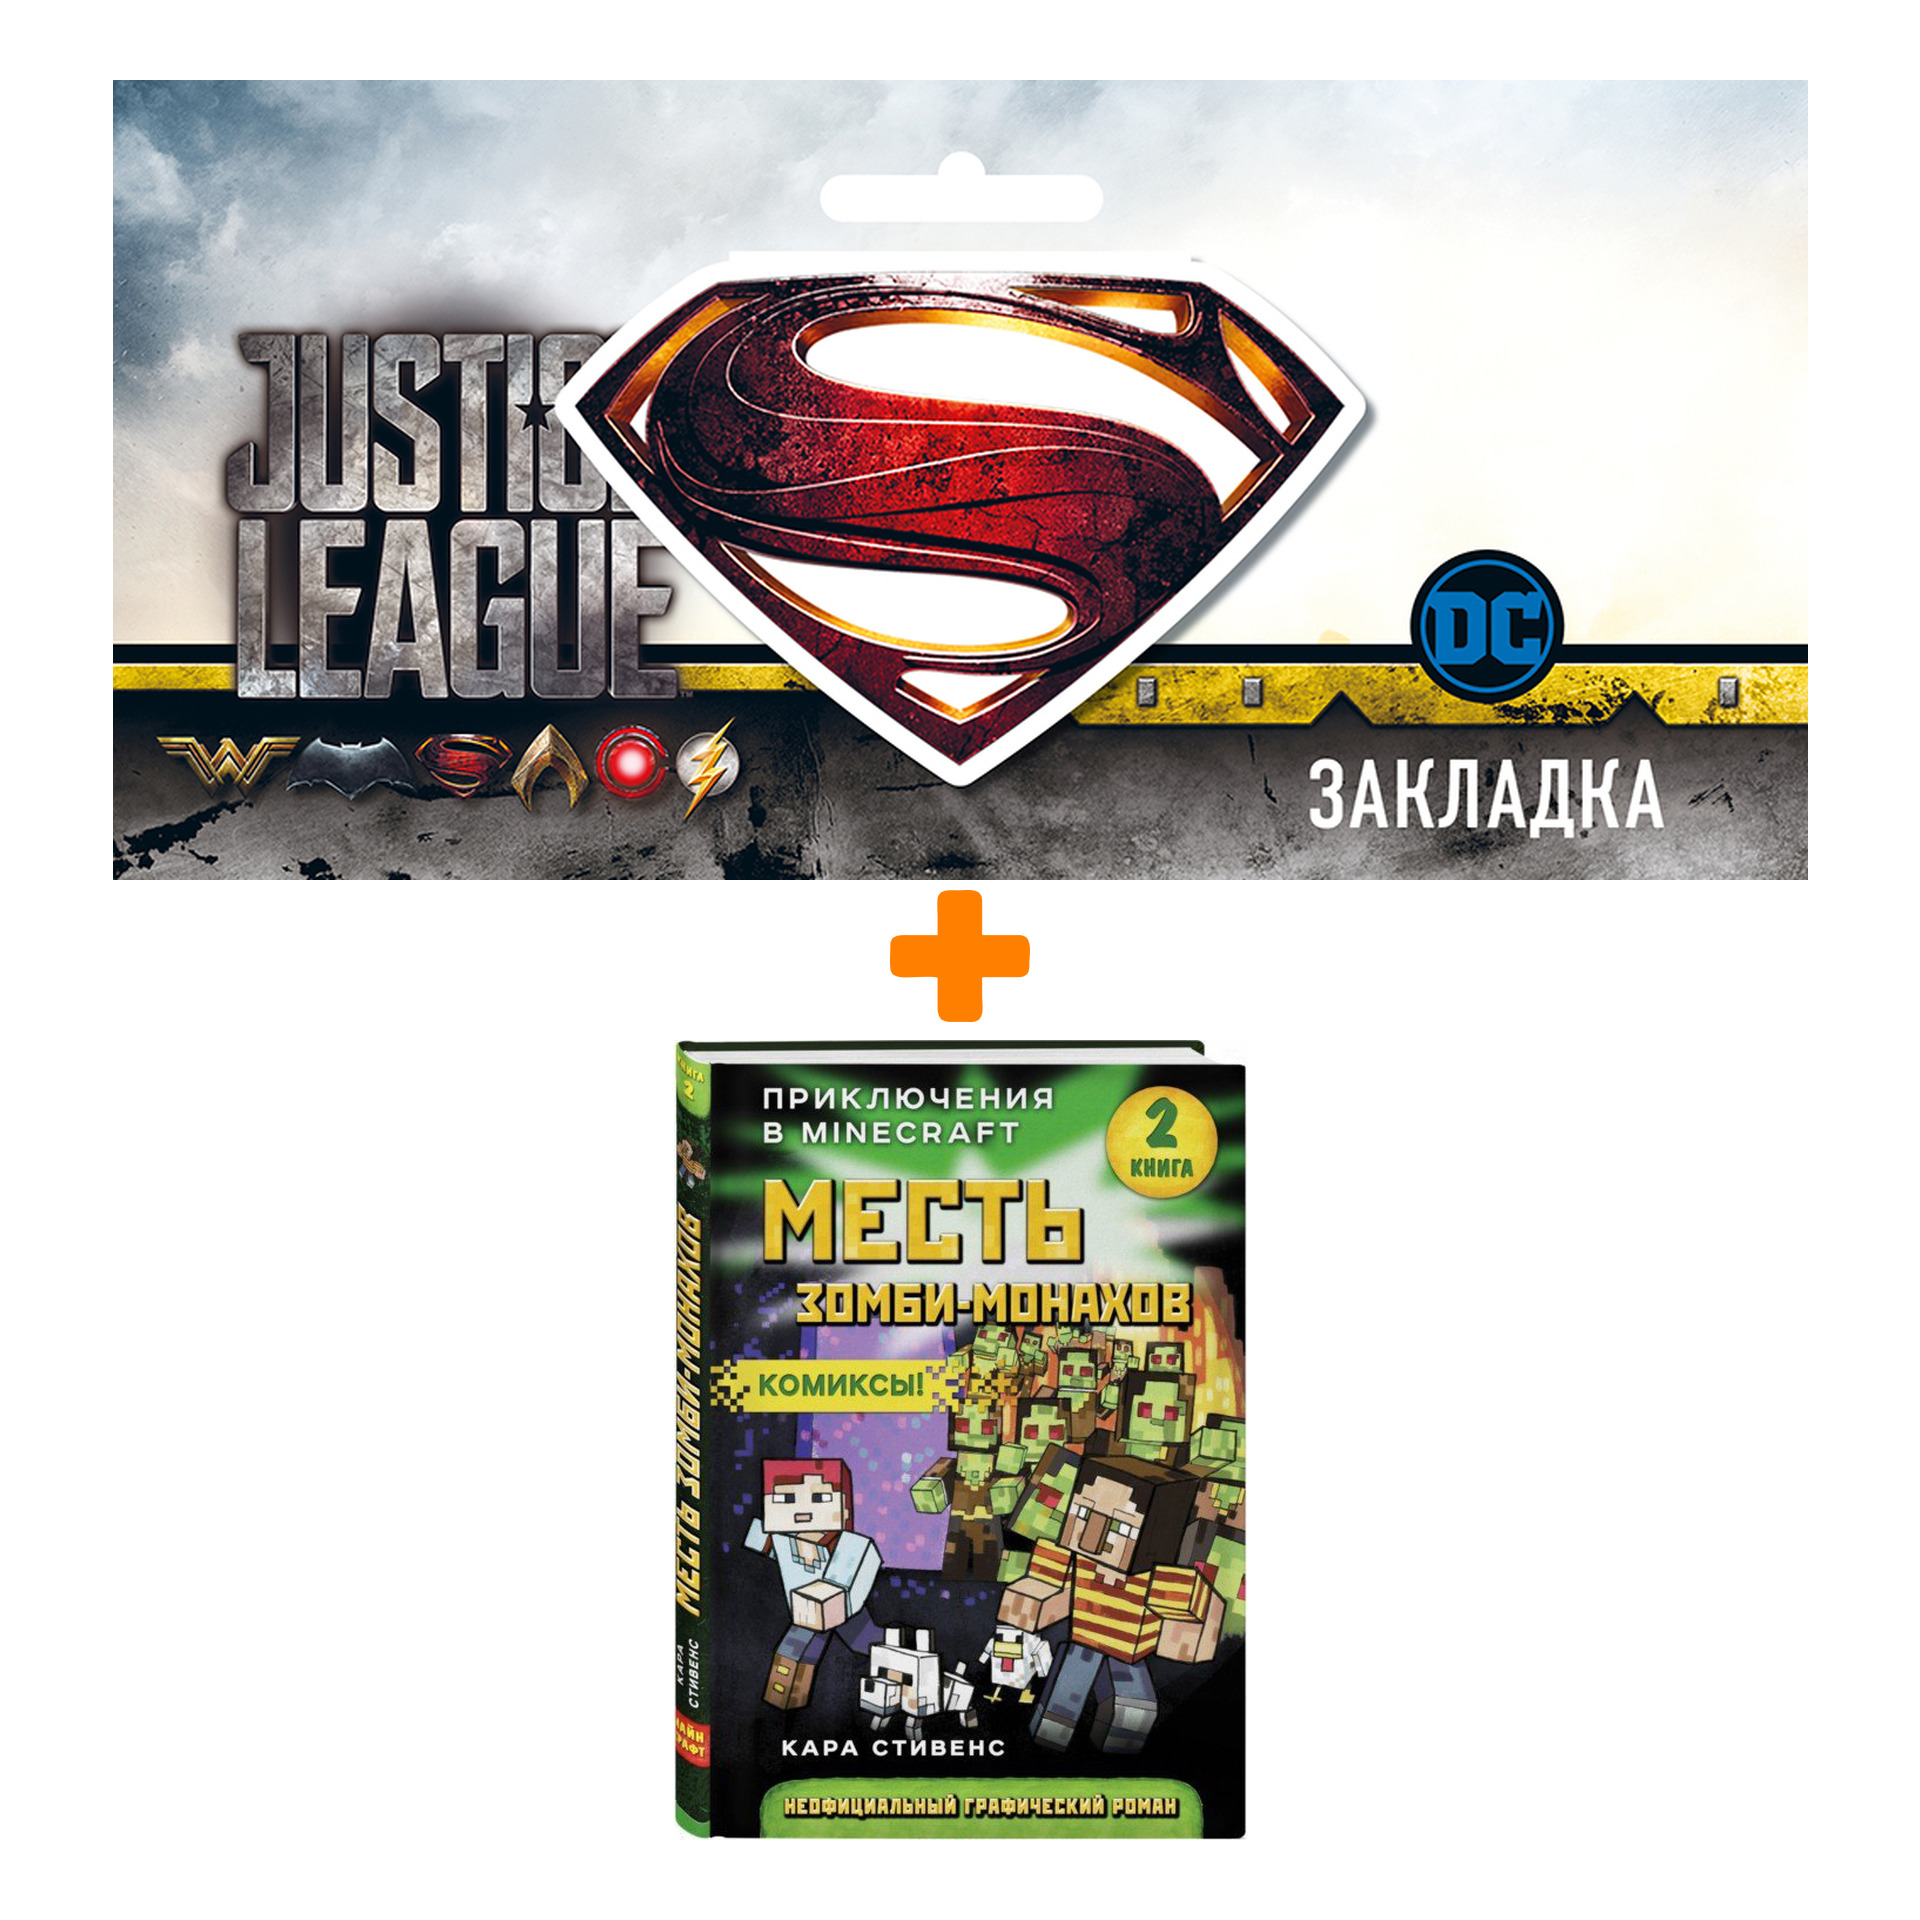 Набор Комикс Приключения в Minecraft Месть зомби-монахов Книга 2 + Закладка DC Justice League Superman магнитная